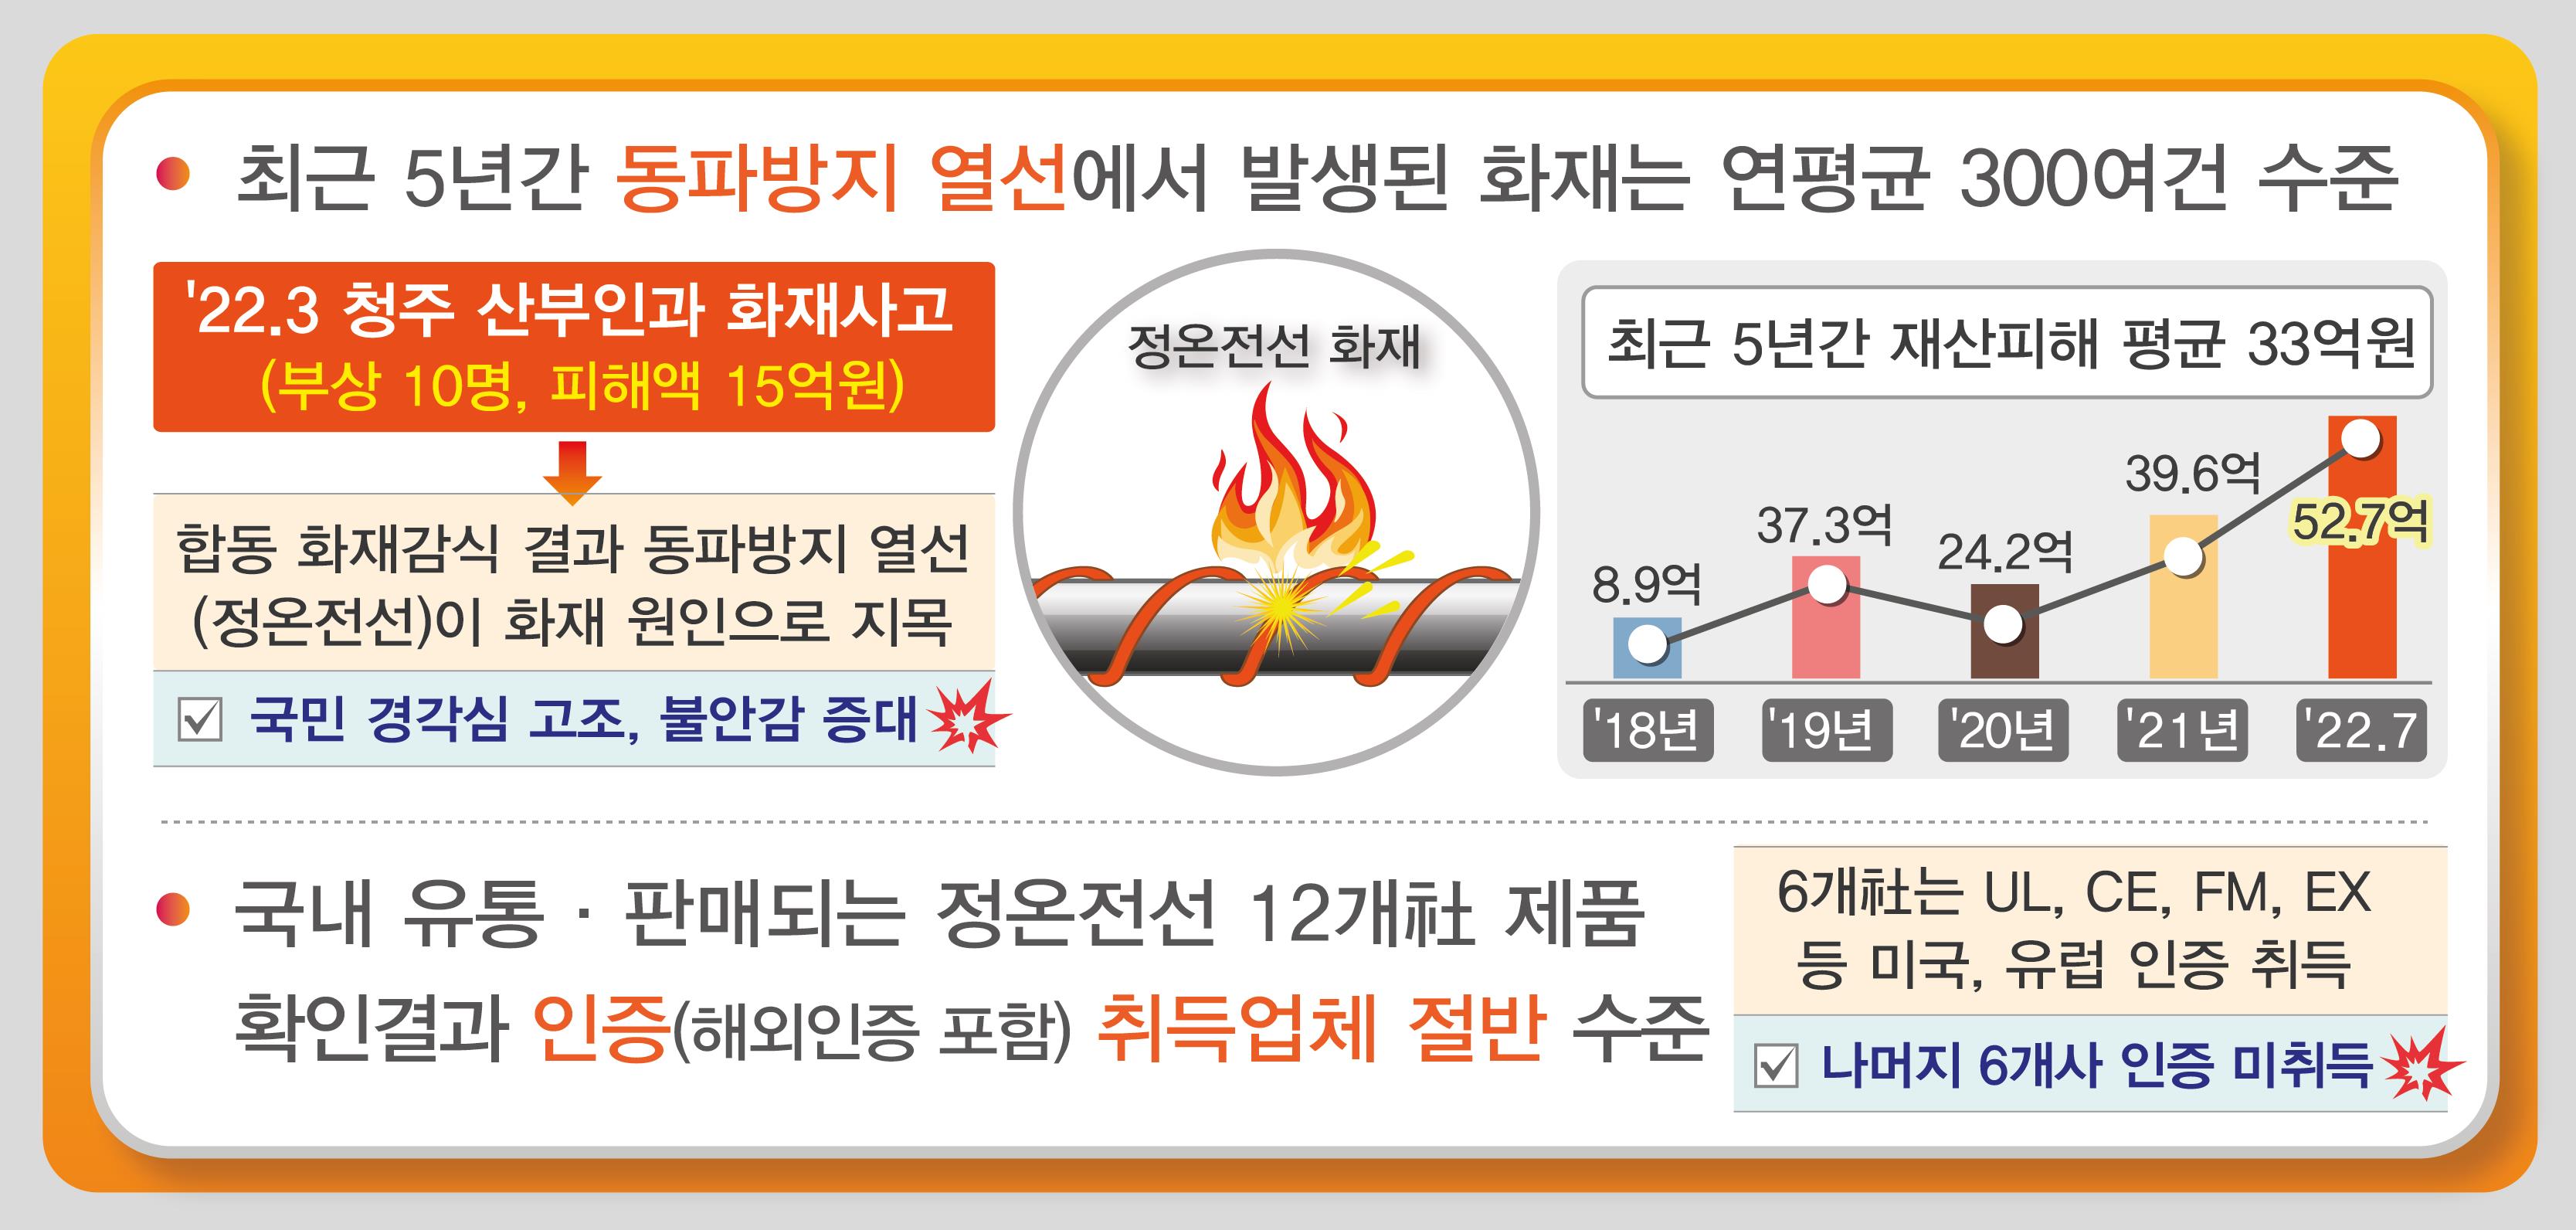 동파방지 열선서 연 300건 화재…절반이 미등록 업체 제품